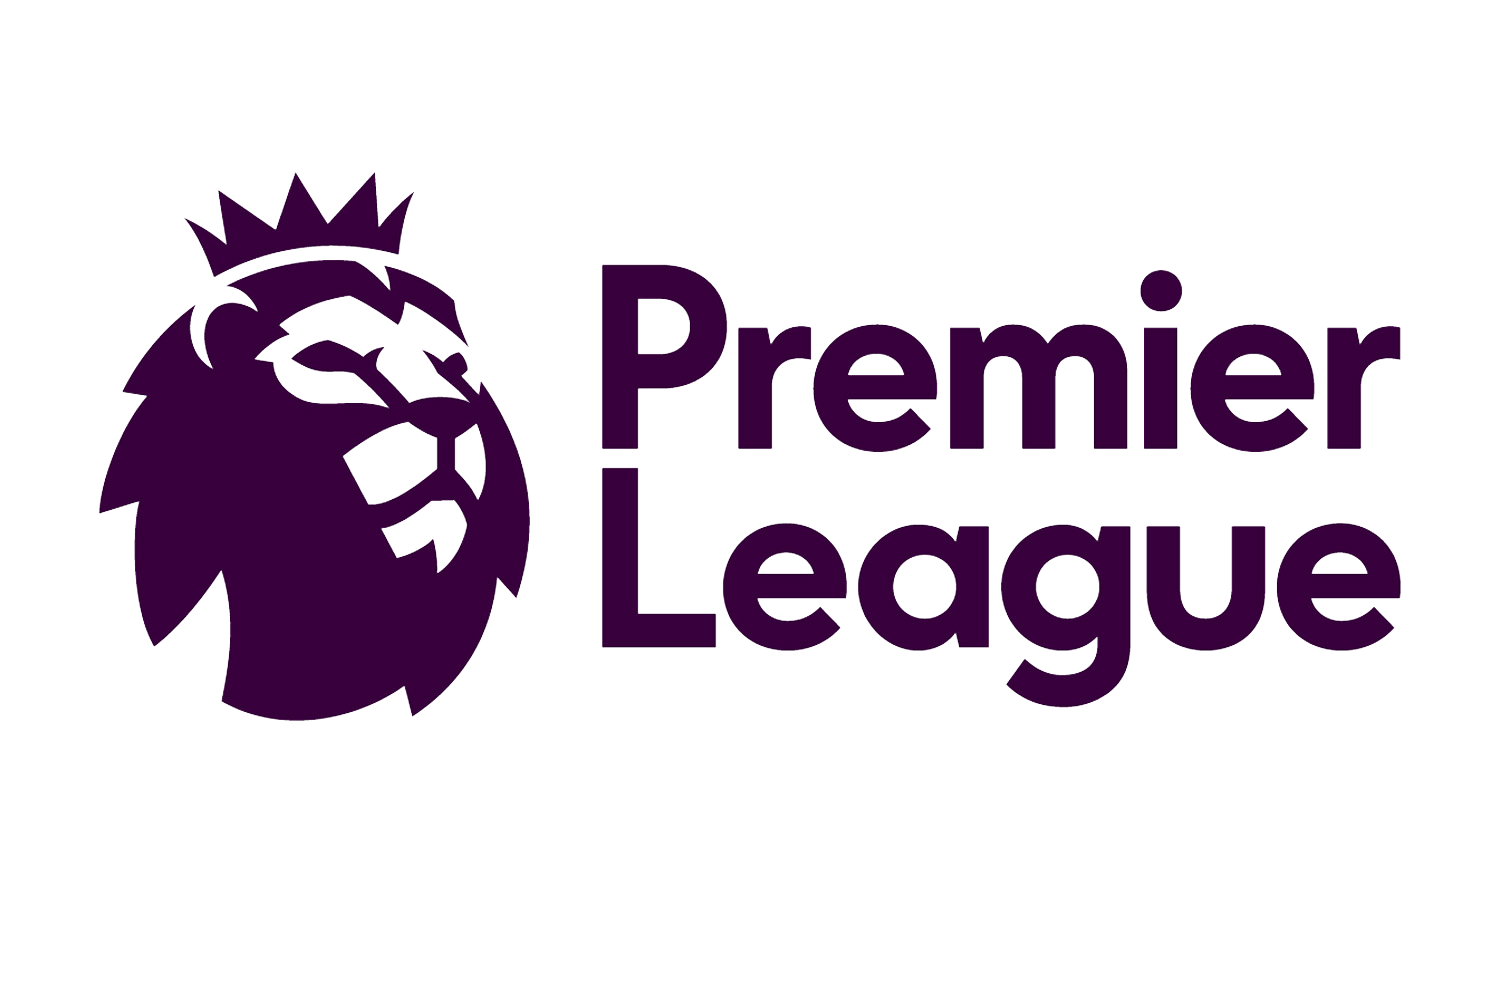 Premier League Transparent Background PNG Image